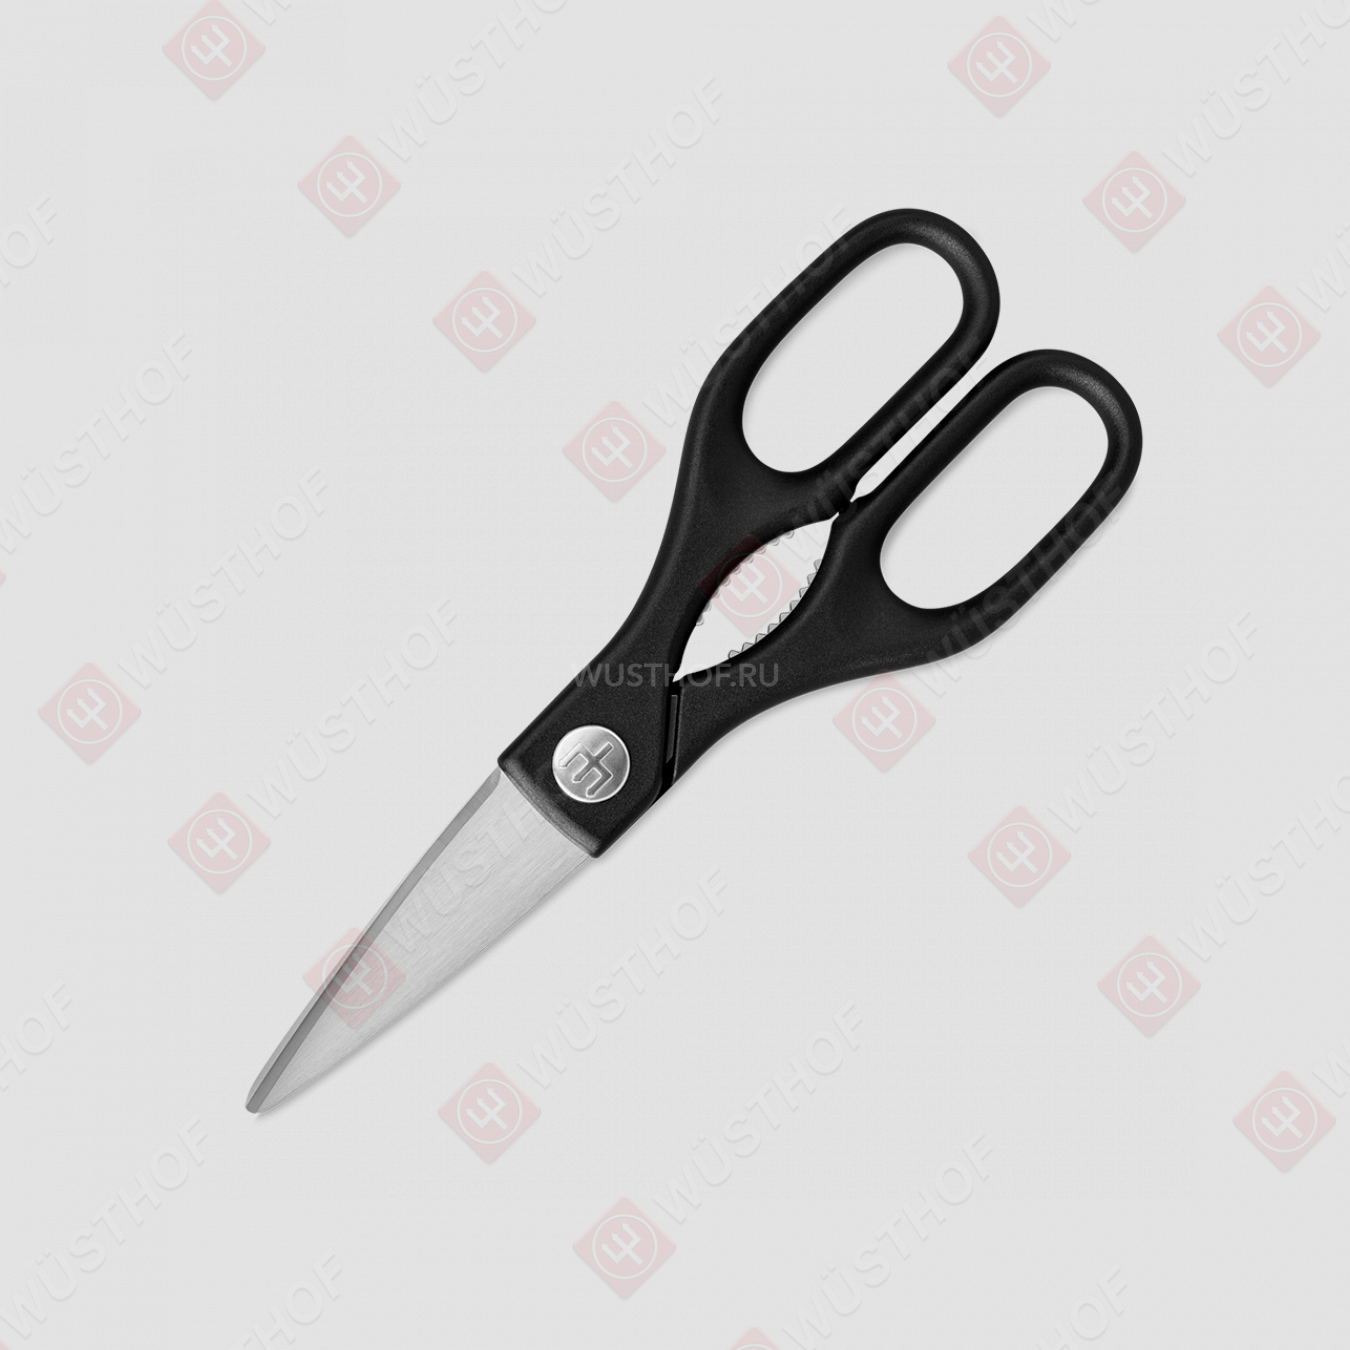 Ножницы кухонные 20,6 см, нержавеющая сталь, пластиковые ручки, серия Professional tools, серия Professional tools, WUESTHOF, Германия